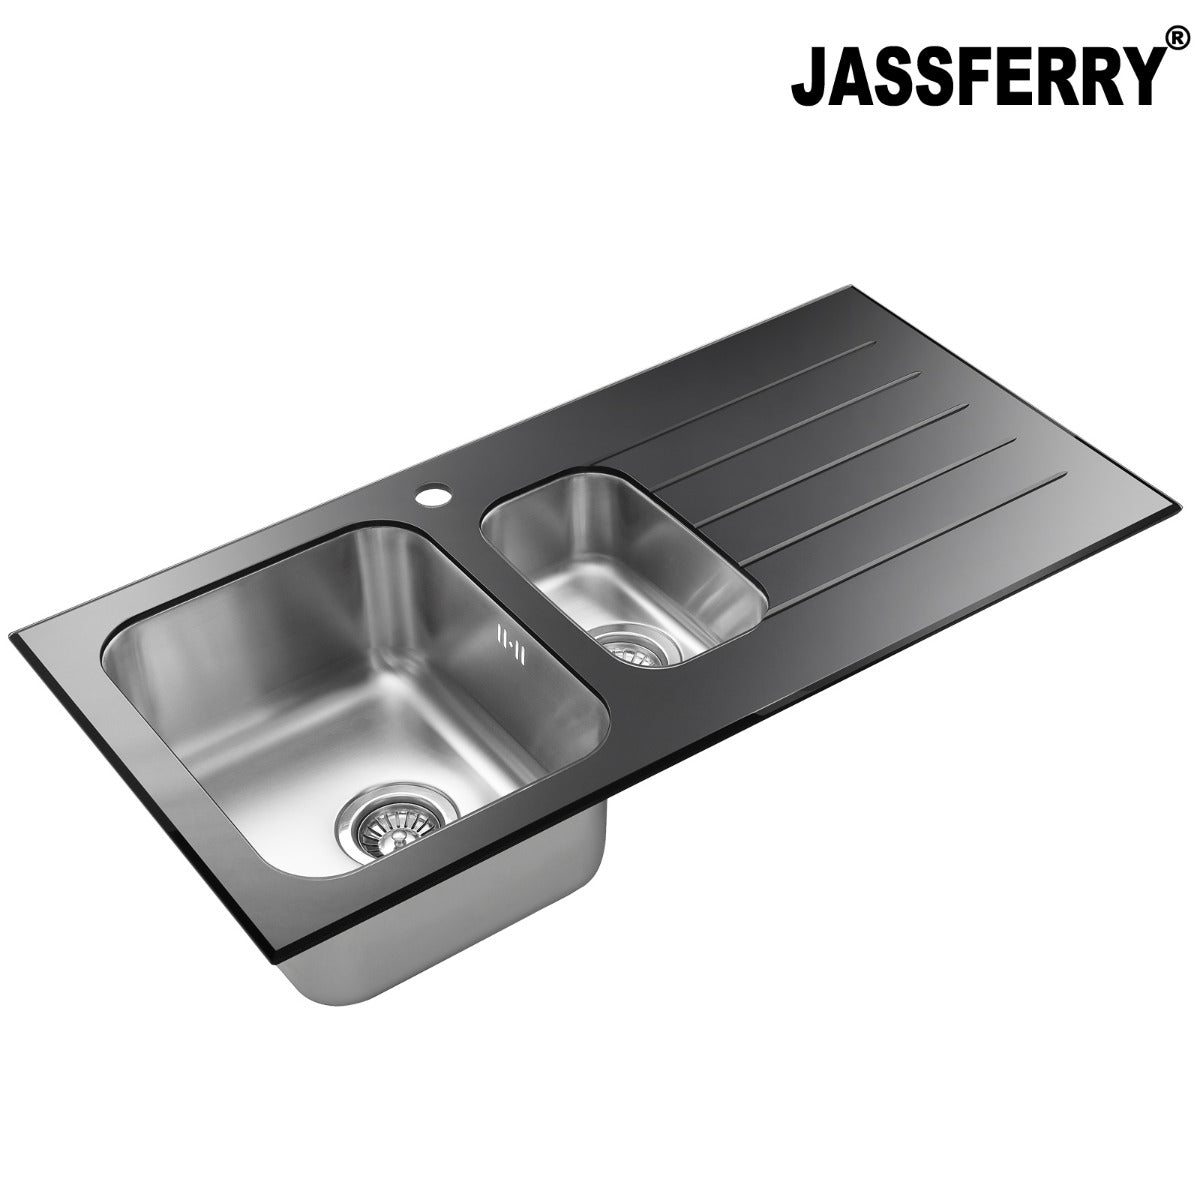 JassferryJASSFERRY Black Glass Top Kitchen Sink Stainless Steel 1.5 Bowl Righthand DrainerKitchen Sinks